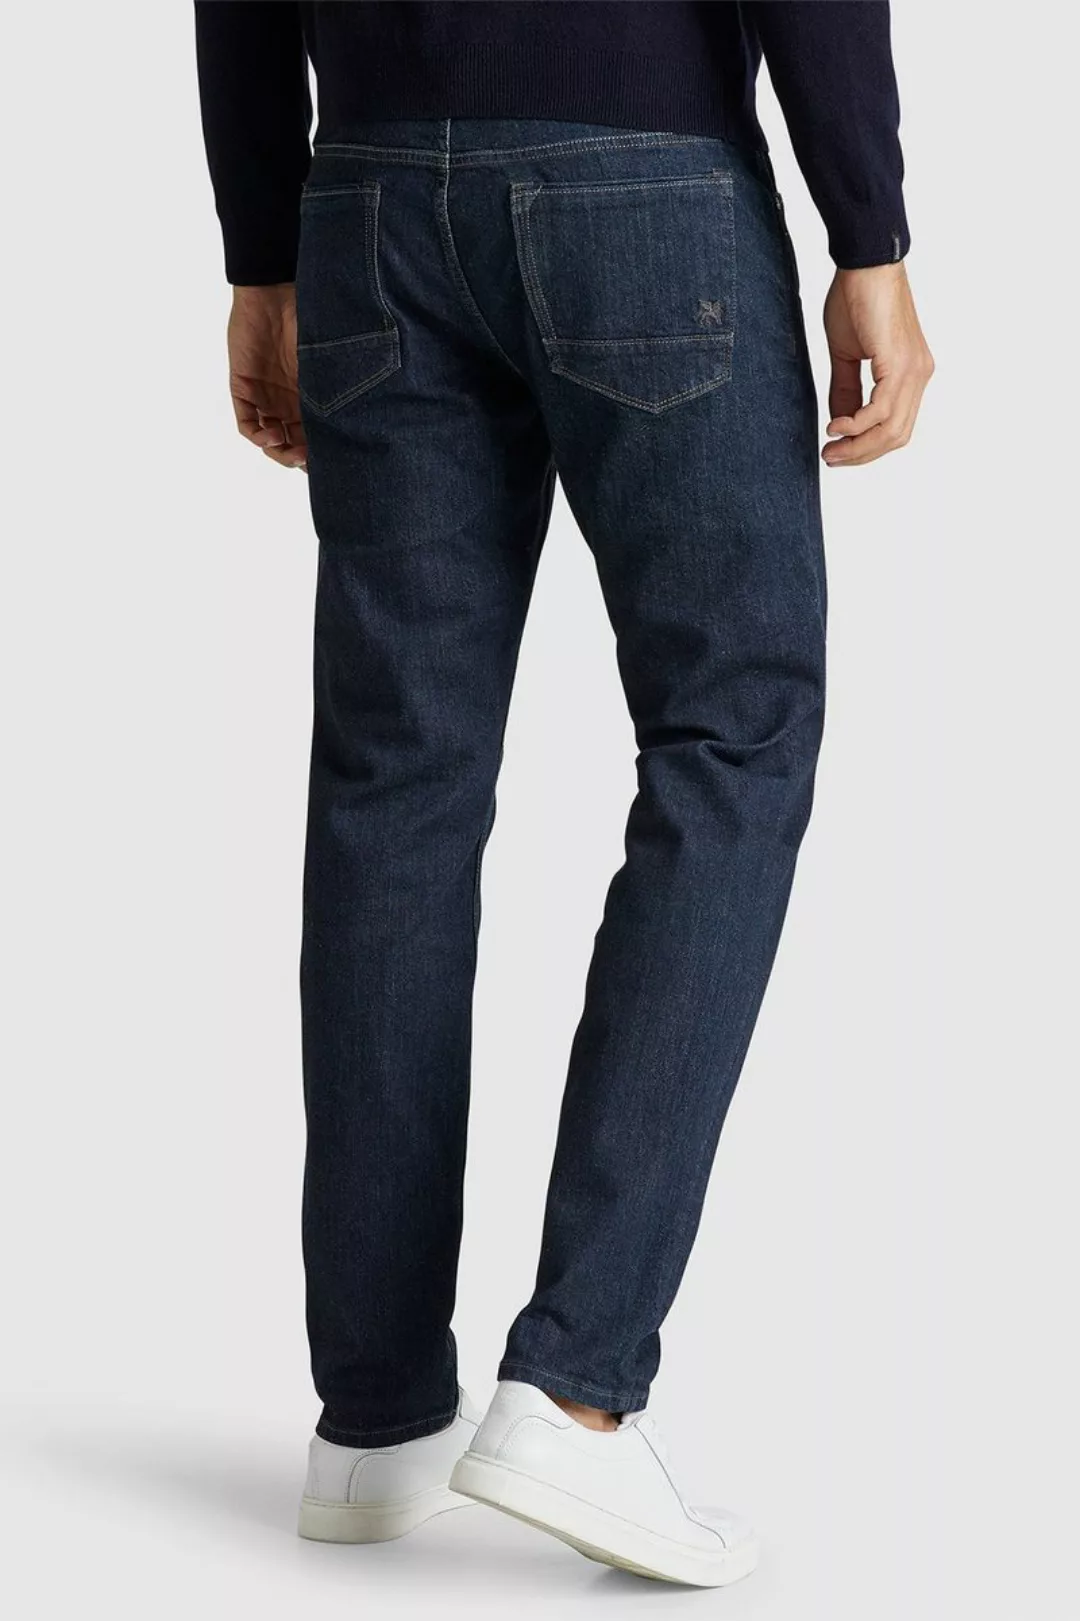 Vanguard Jeans V7 Rider Dunkelblau - Größe W 33 - L 32 günstig online kaufen